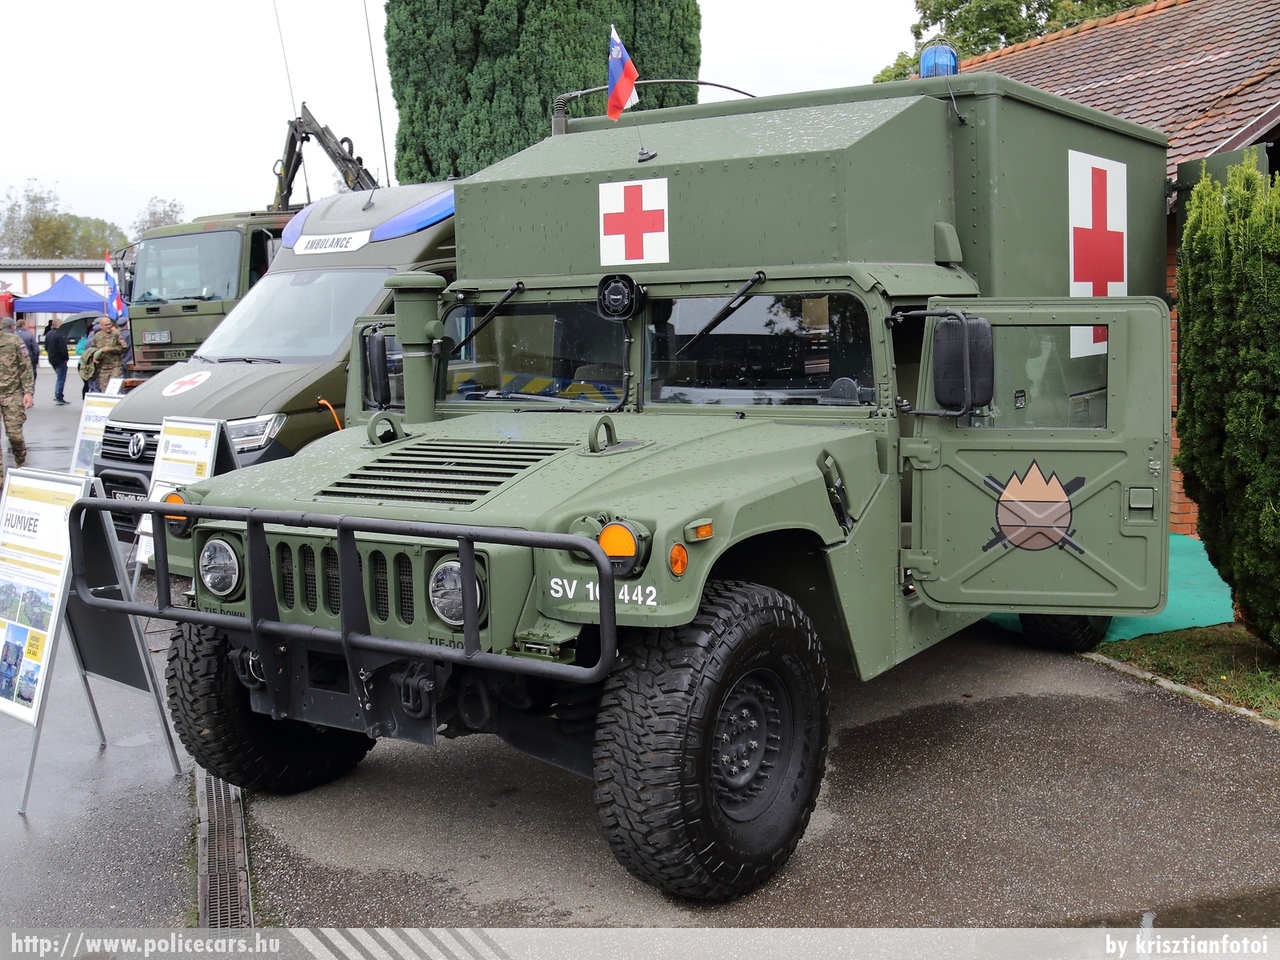 HMMWV, Slovenska vojska, fotó: krisztianfotoi
Keywords: szlovén Szlovénia szlovén slovenian katonai military ambulance mentő mentőautó